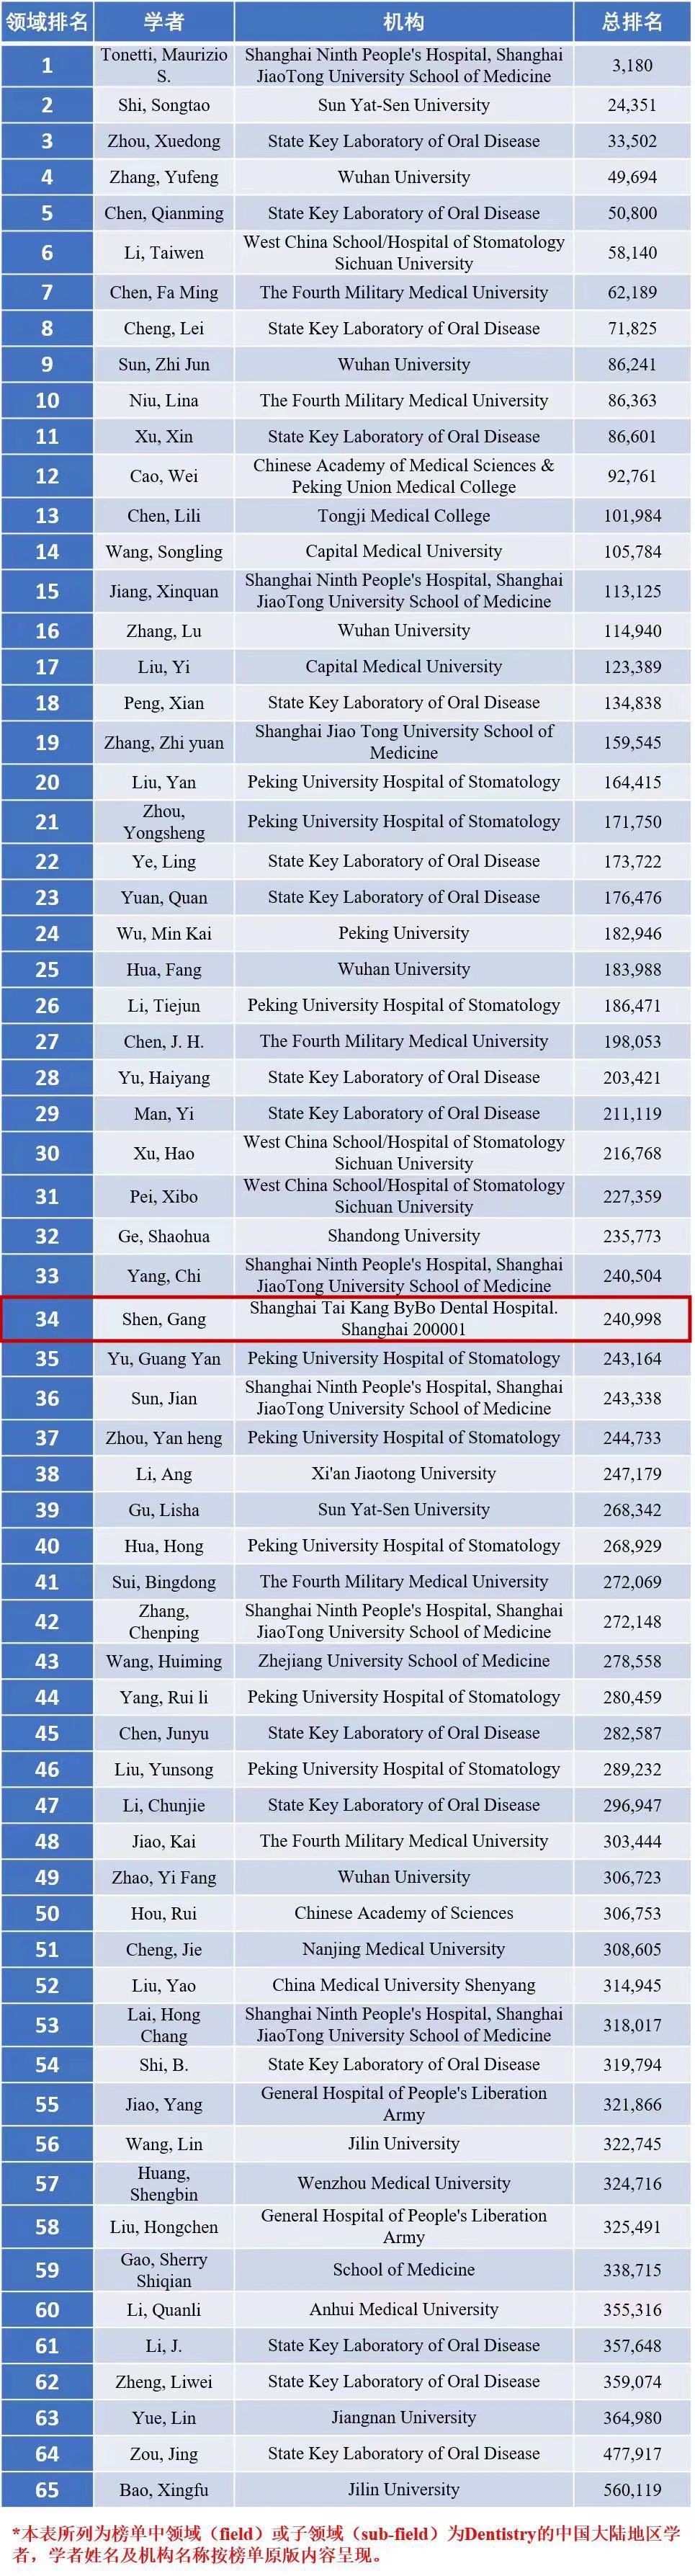 沈刚教授入选2023年度《全球前2%顶尖科学家年度科学影响力榜单》